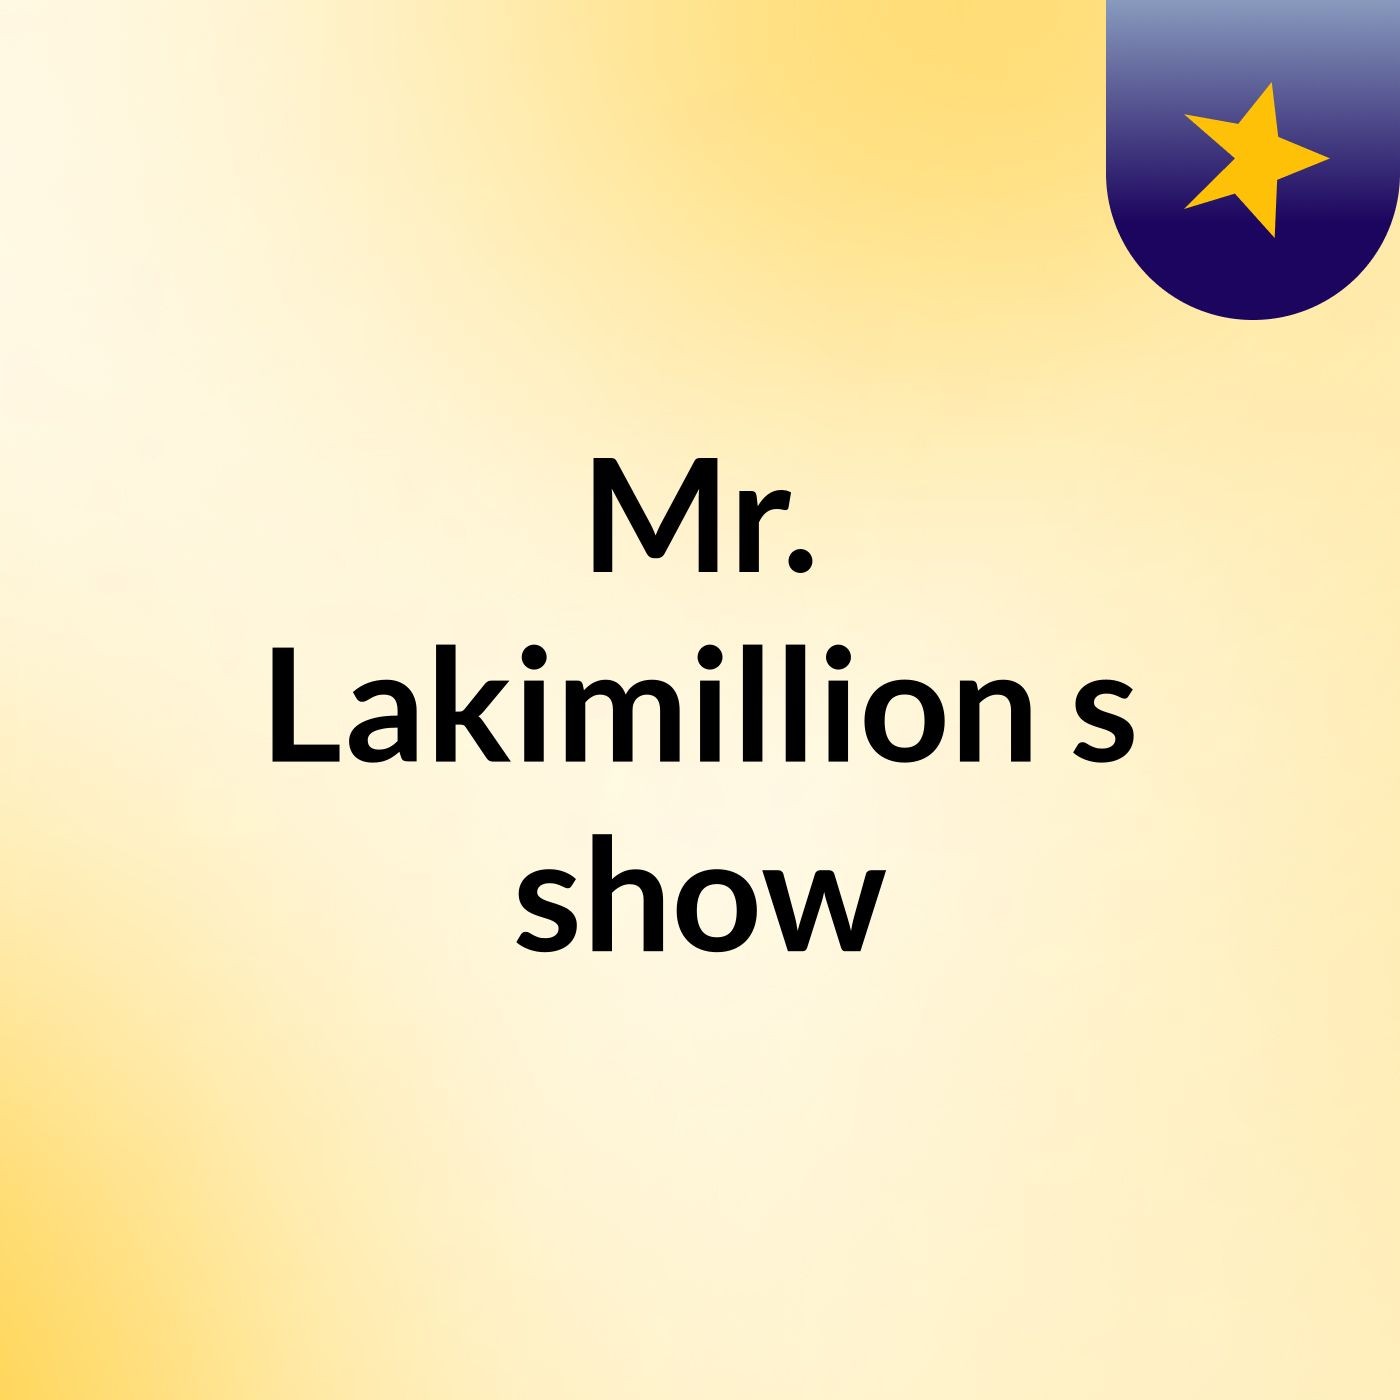 Mr. Lakimillion's show